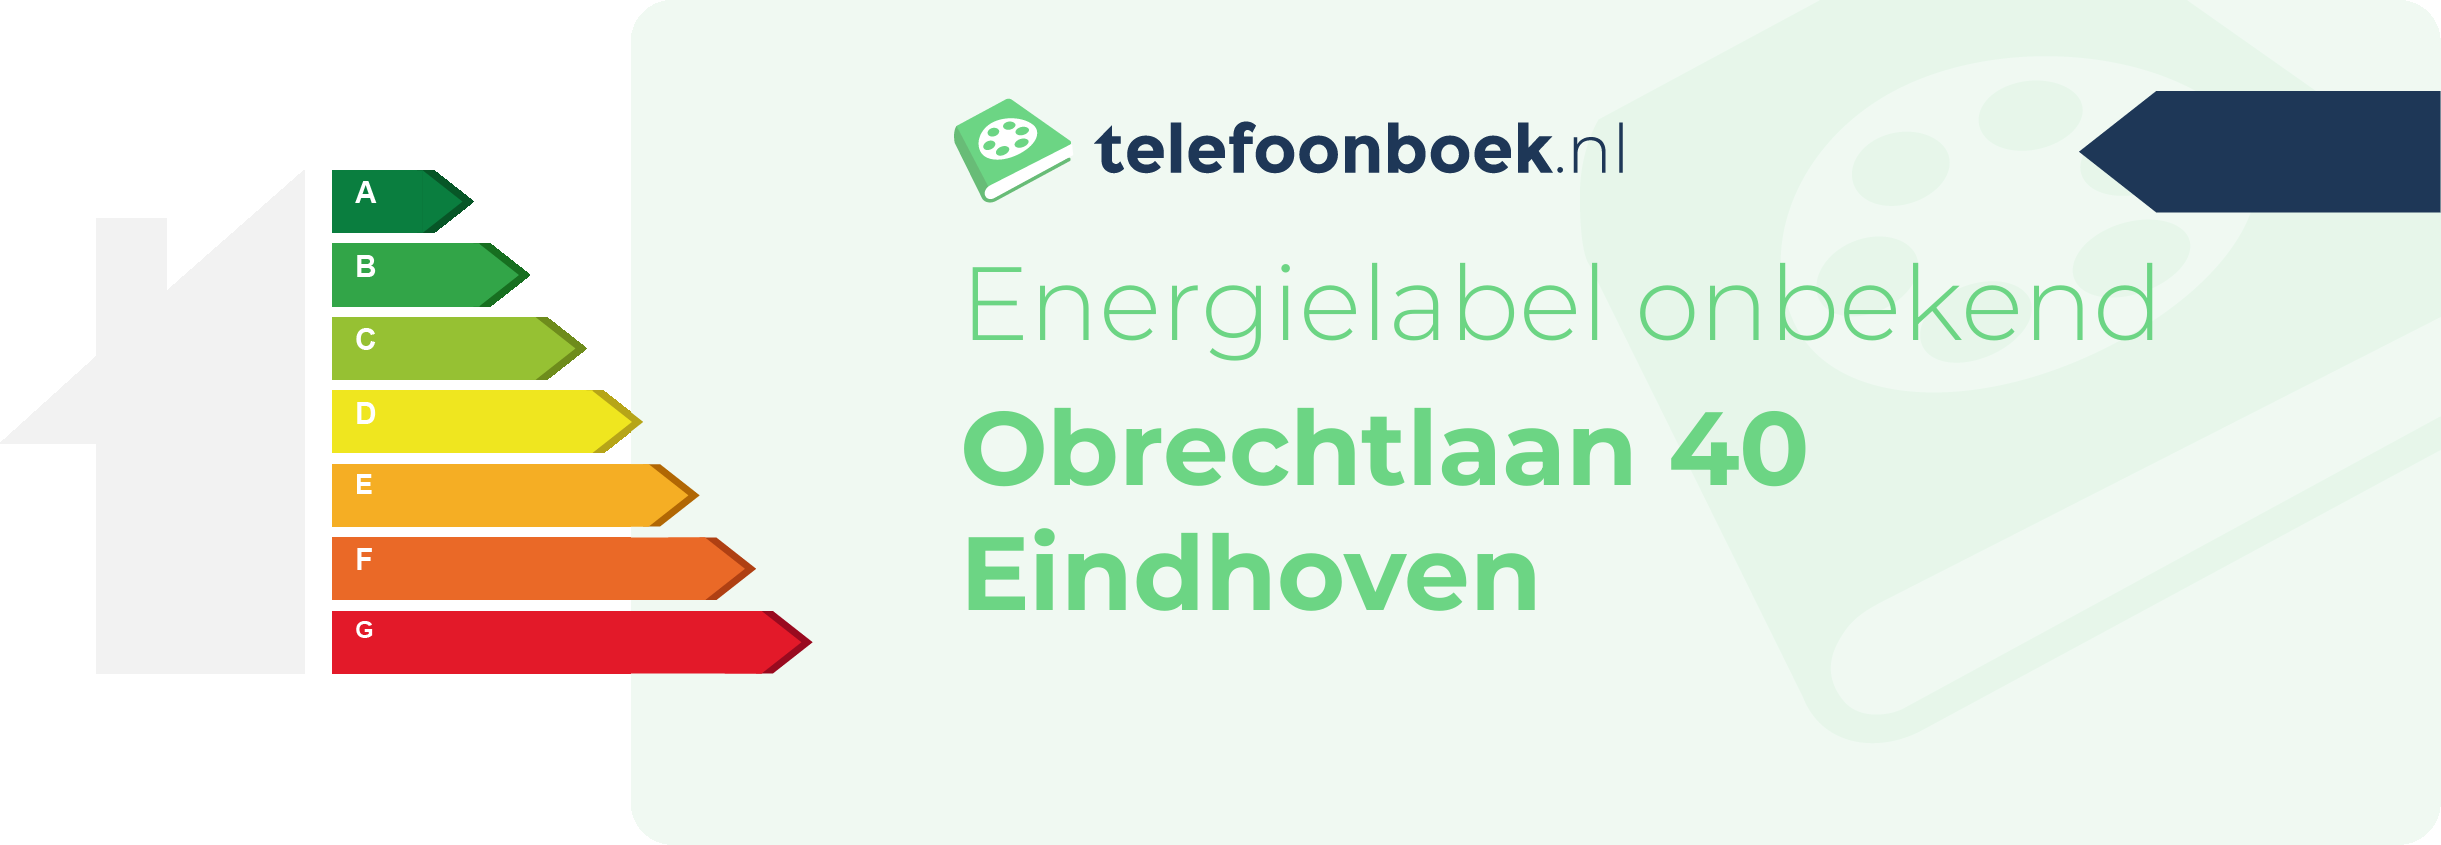 Energielabel Obrechtlaan 40 Eindhoven